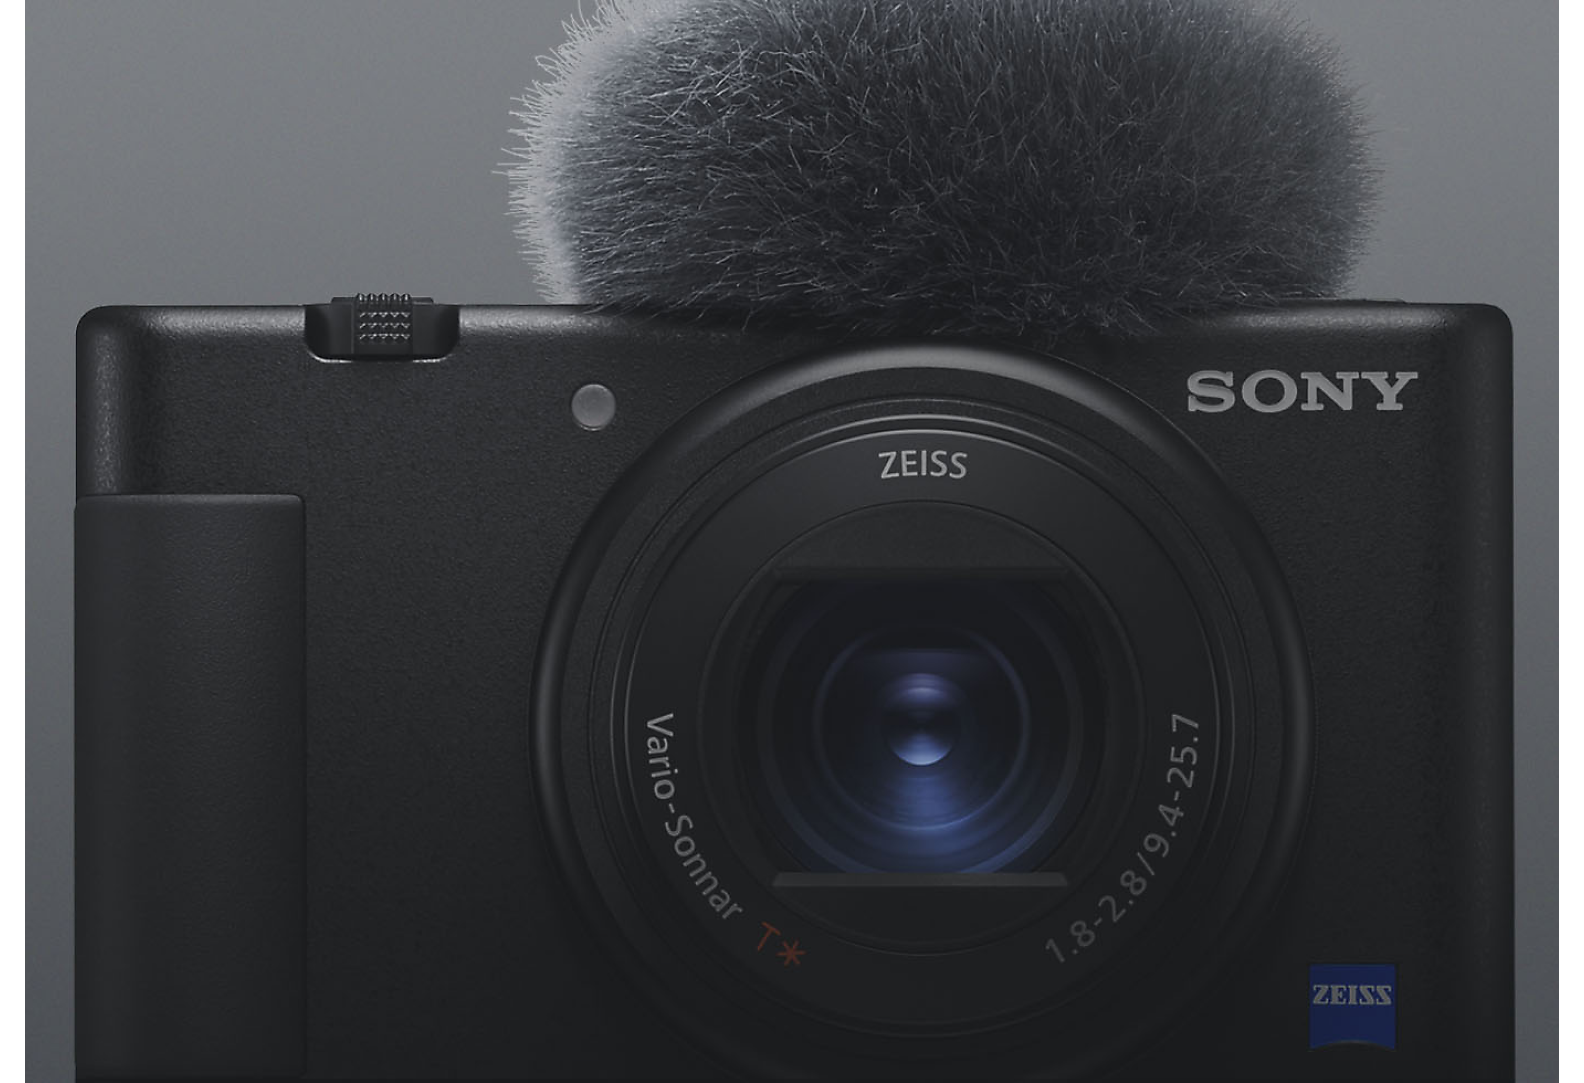 Vista frontal de una cámara compacta Sony negra con micrófono incorporado